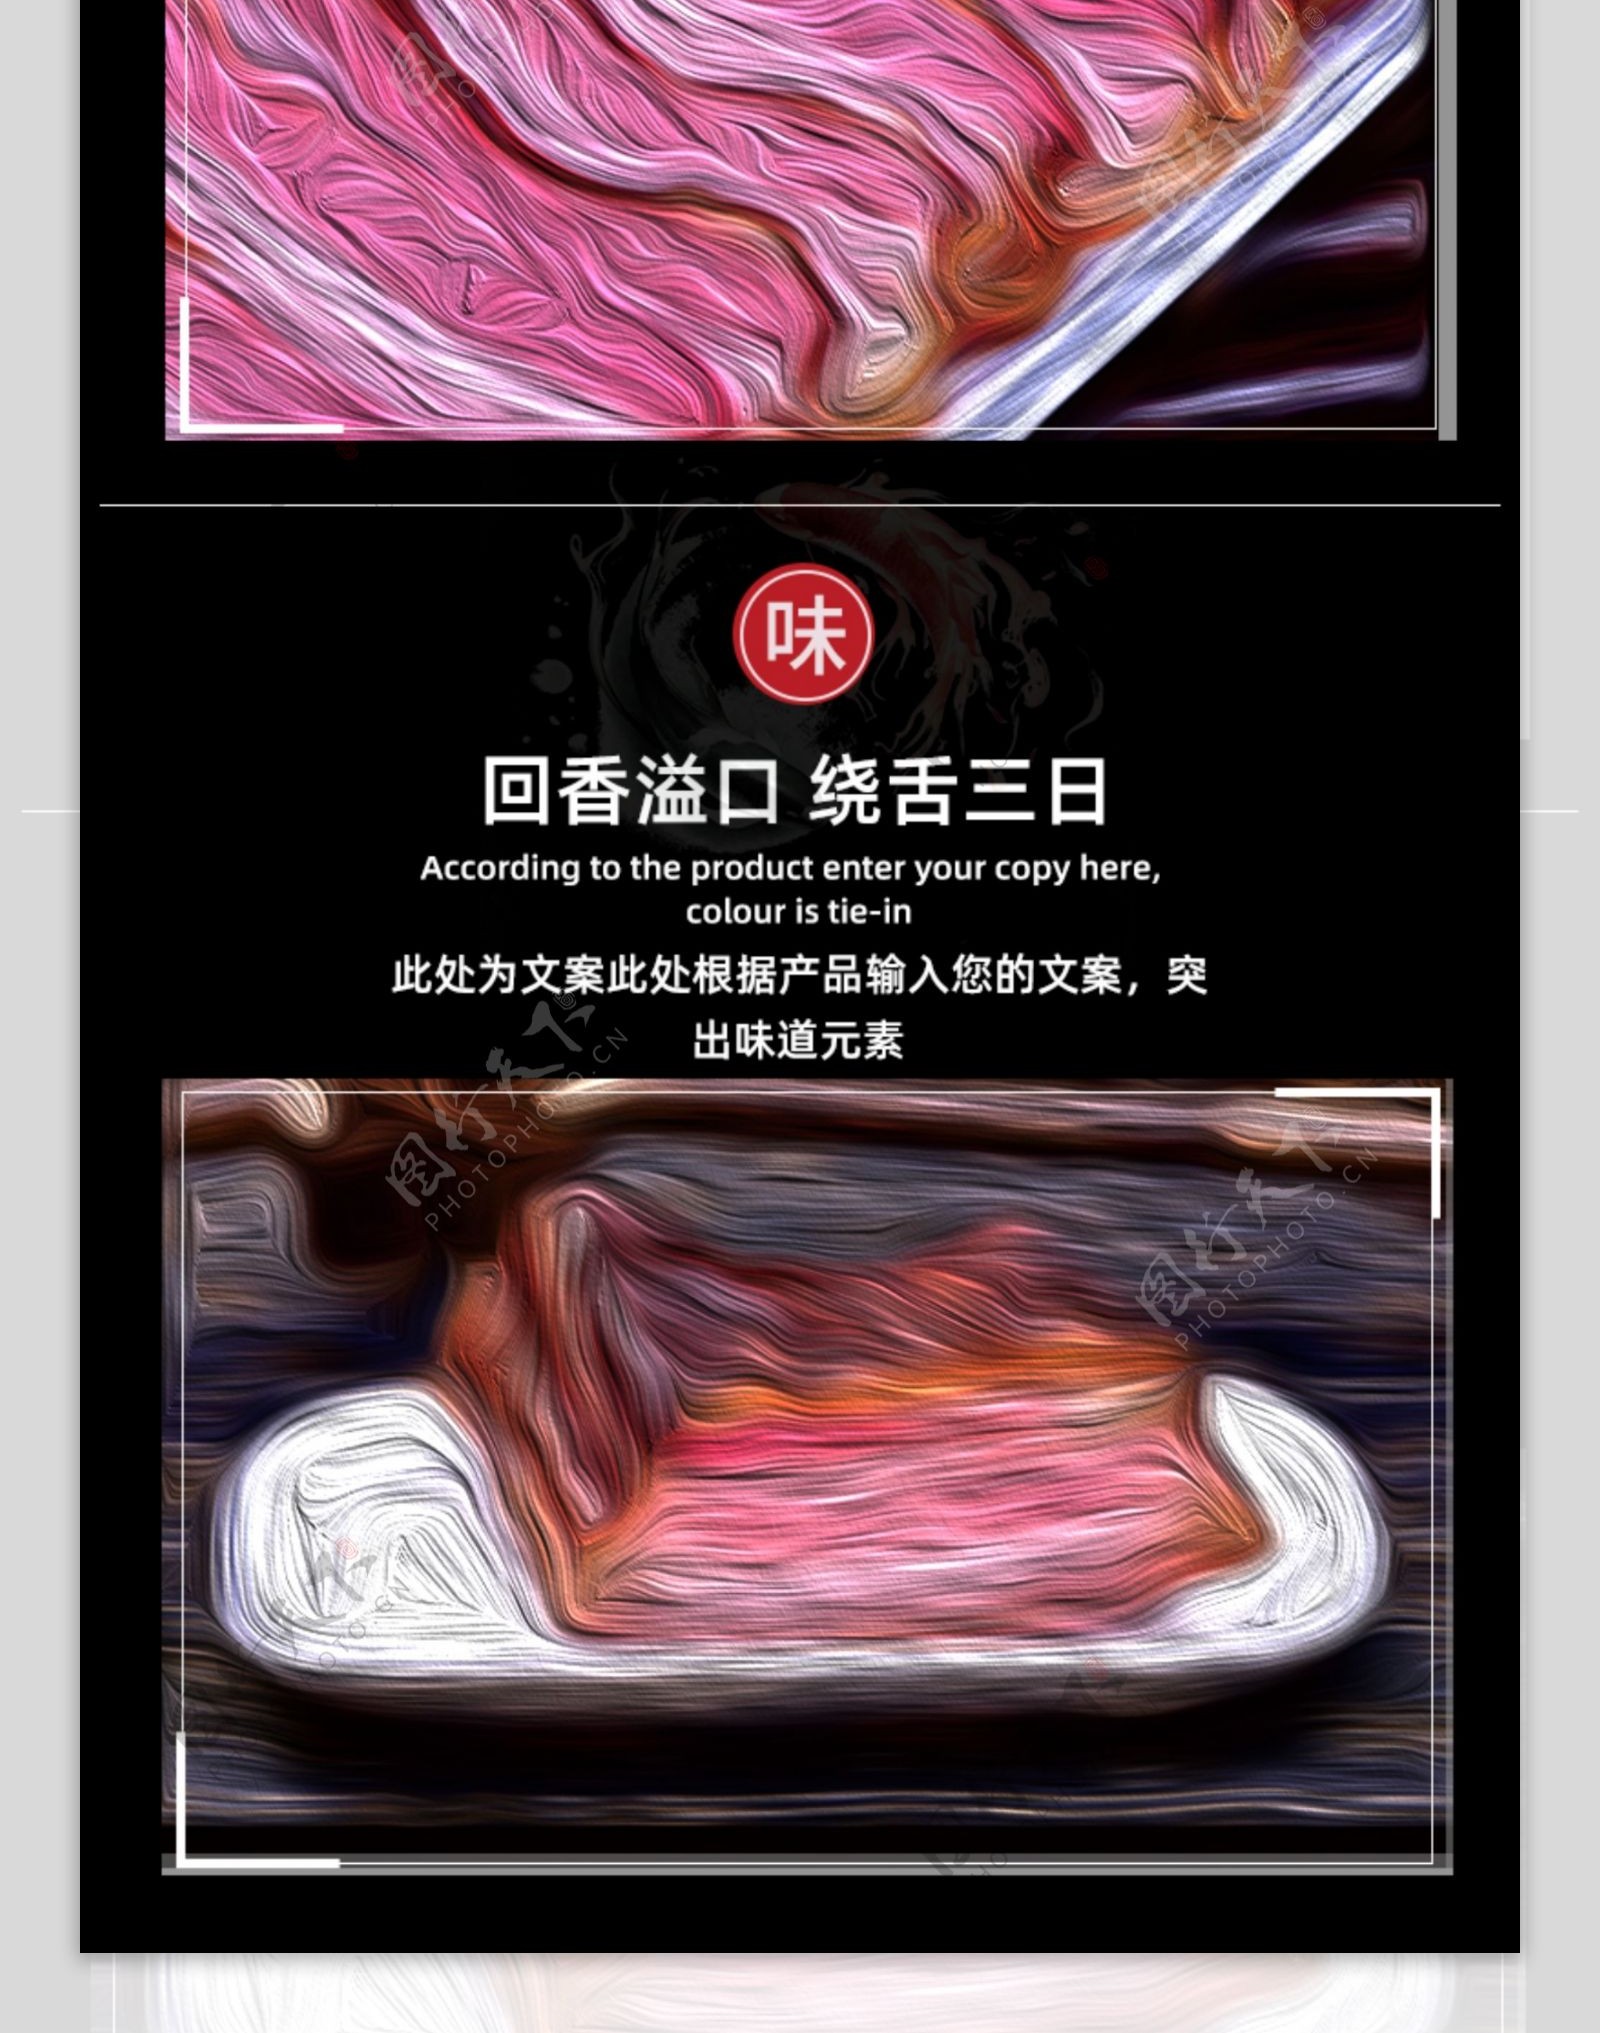 中国风食品通用色香味详情页